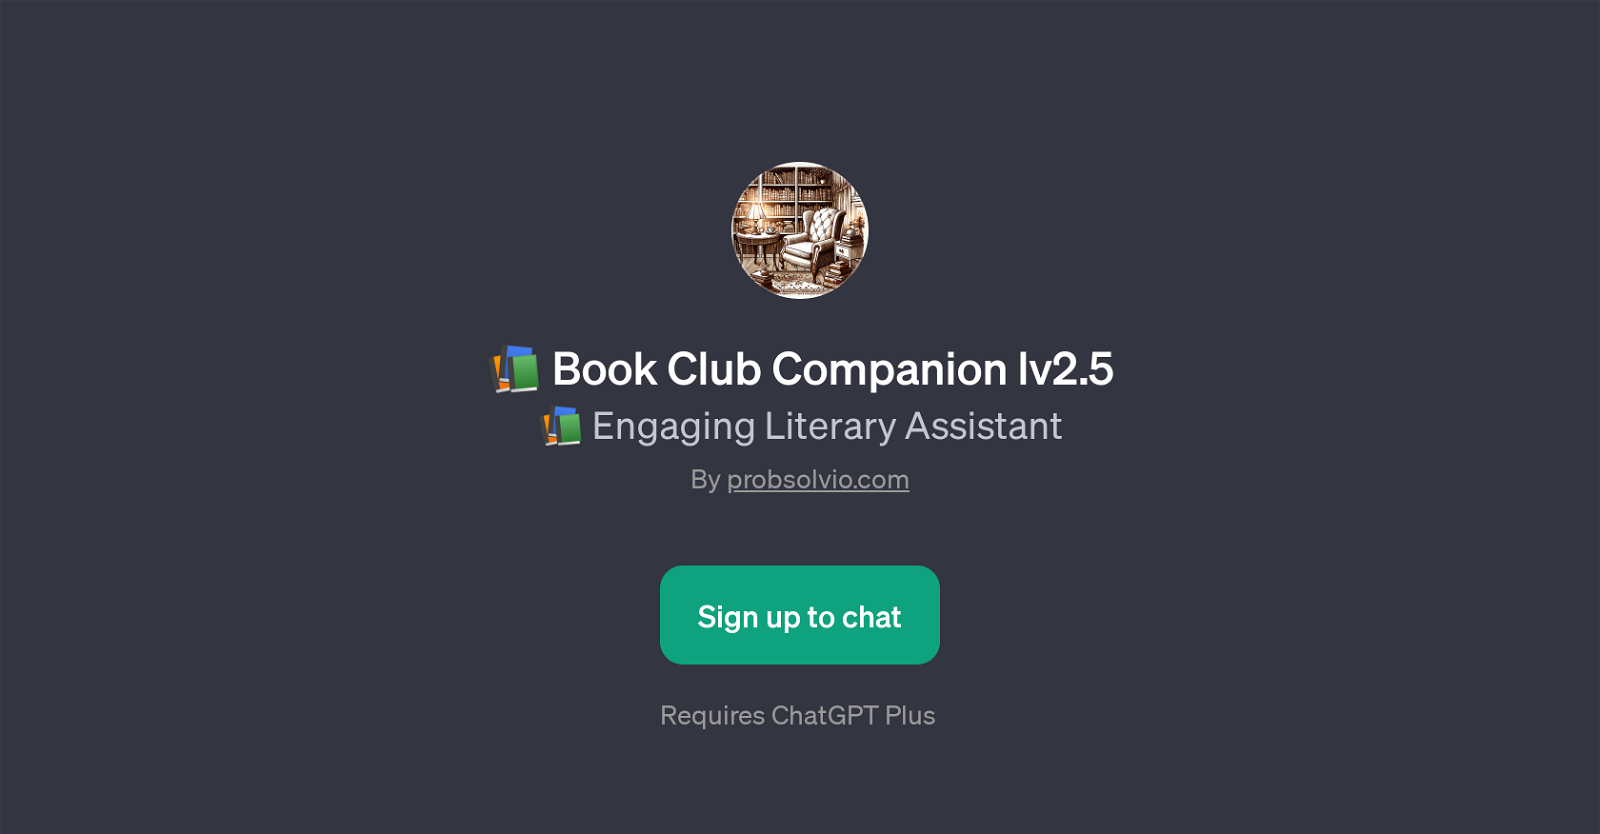 Book Club Companion lv2.5 website